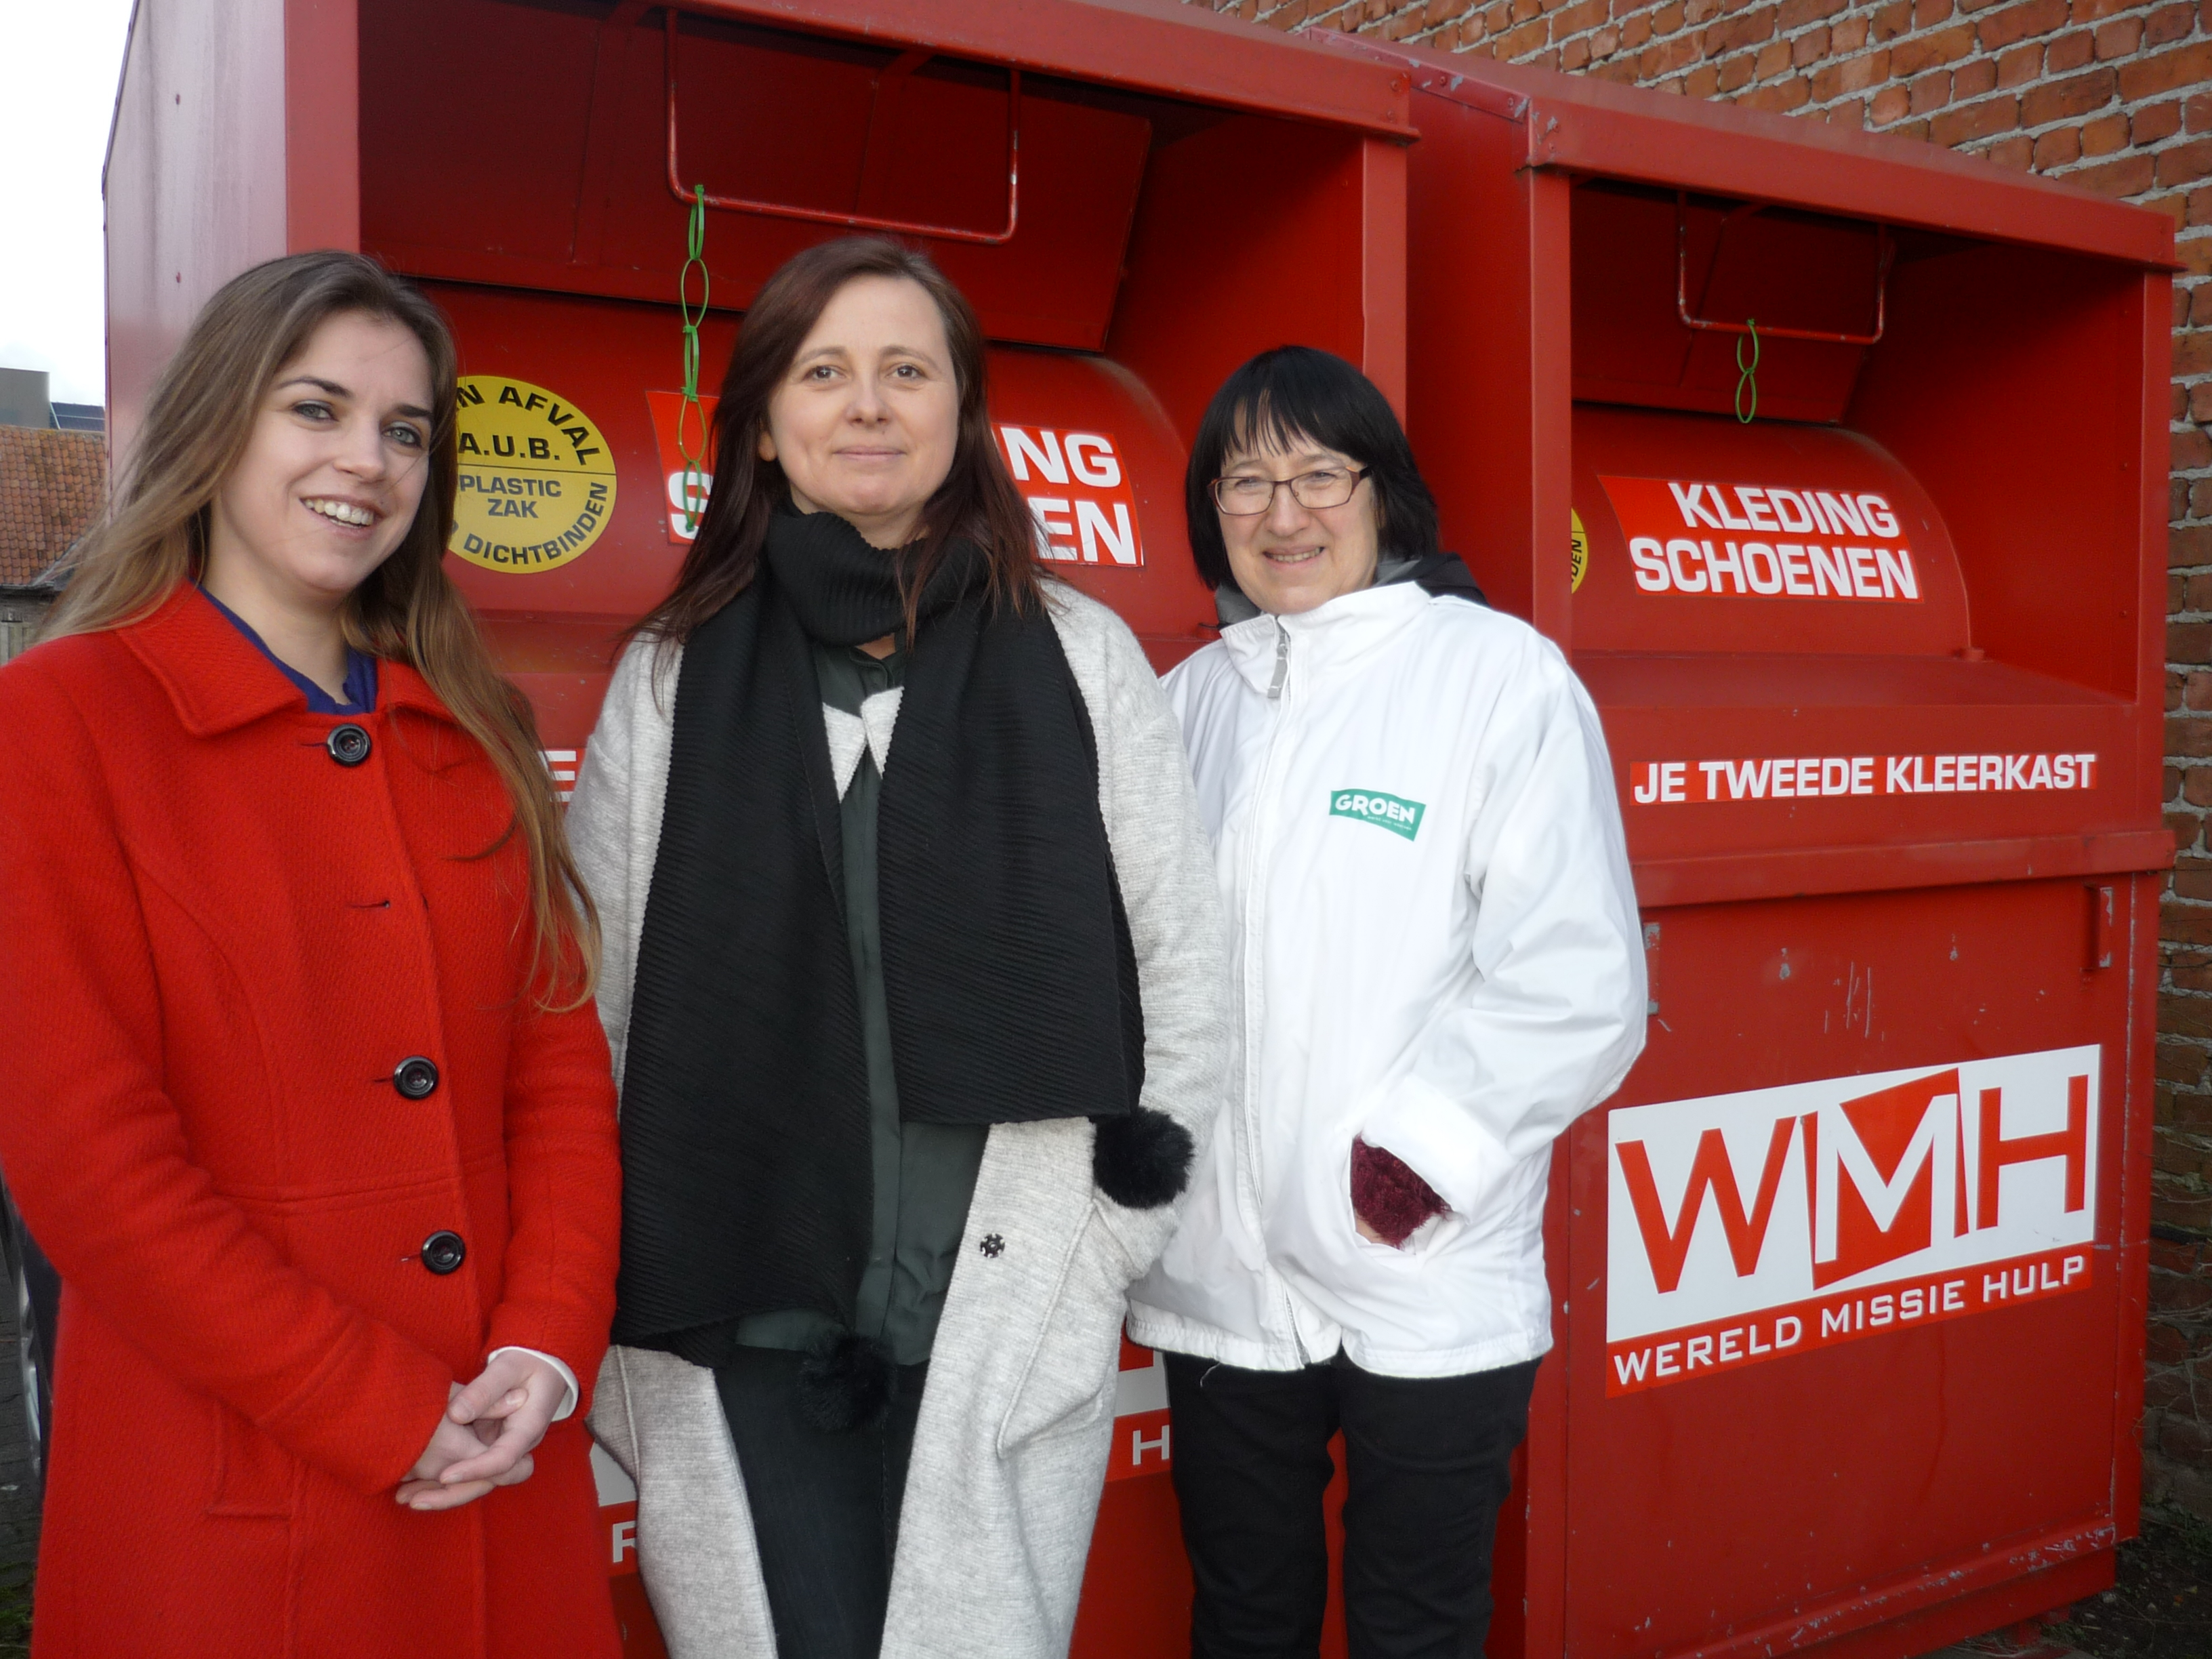 Kledingcontainers in Beernem (gemeenteraad januari 2018)